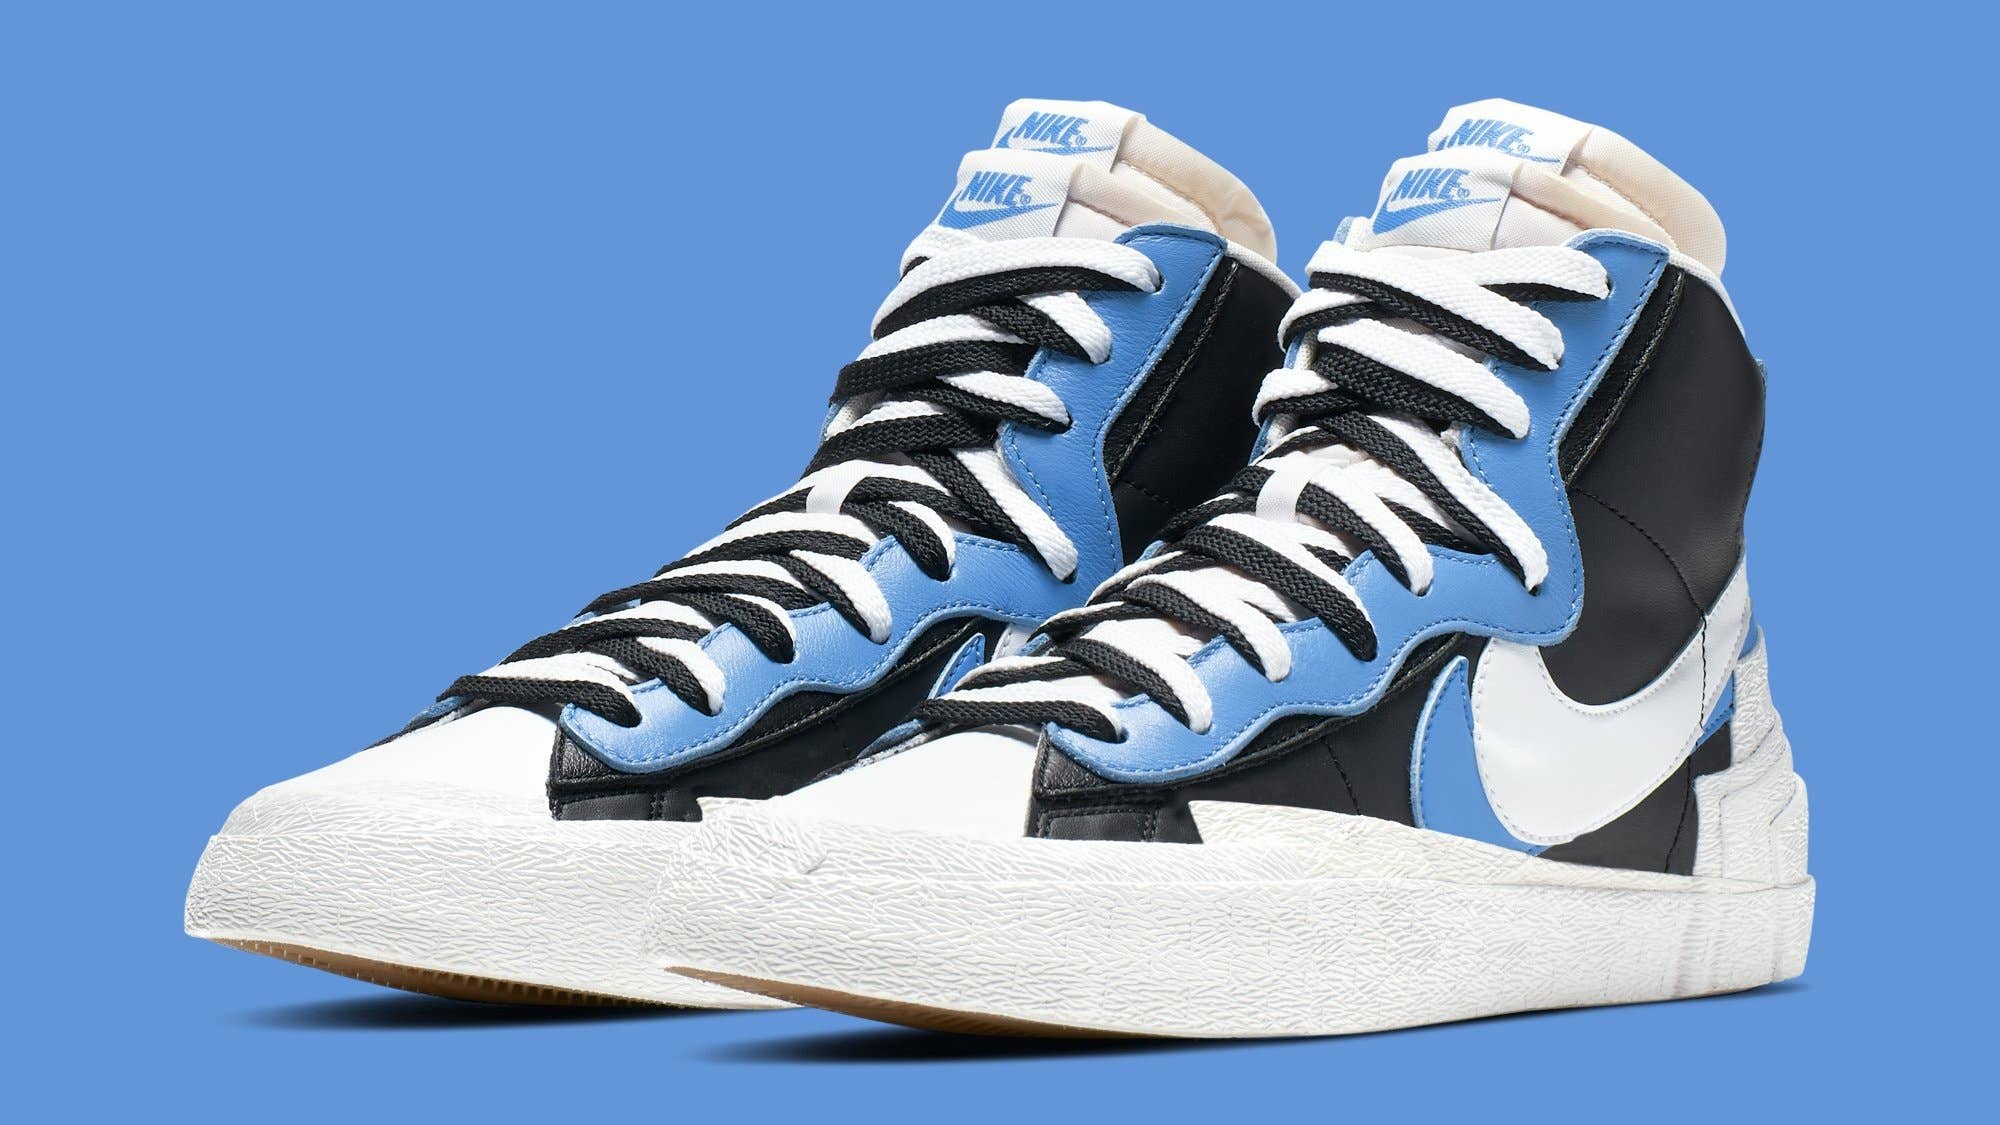 Sacai x Nike Blazer High 'Black/White/University Blue/Sail' BV0072 001 (Pair)